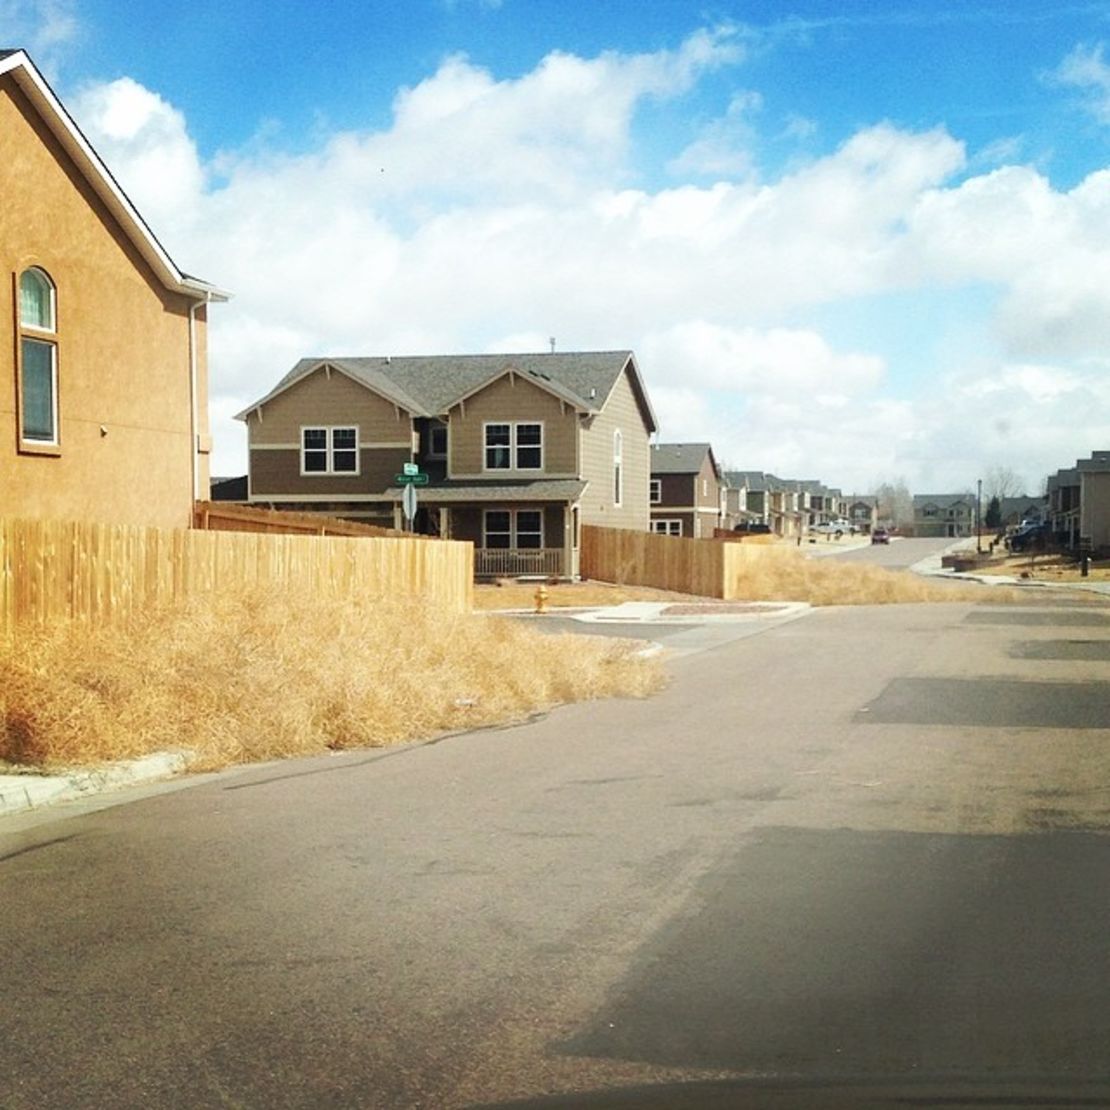 Whitey Grant's neighborhood is littered with tumbleweeds